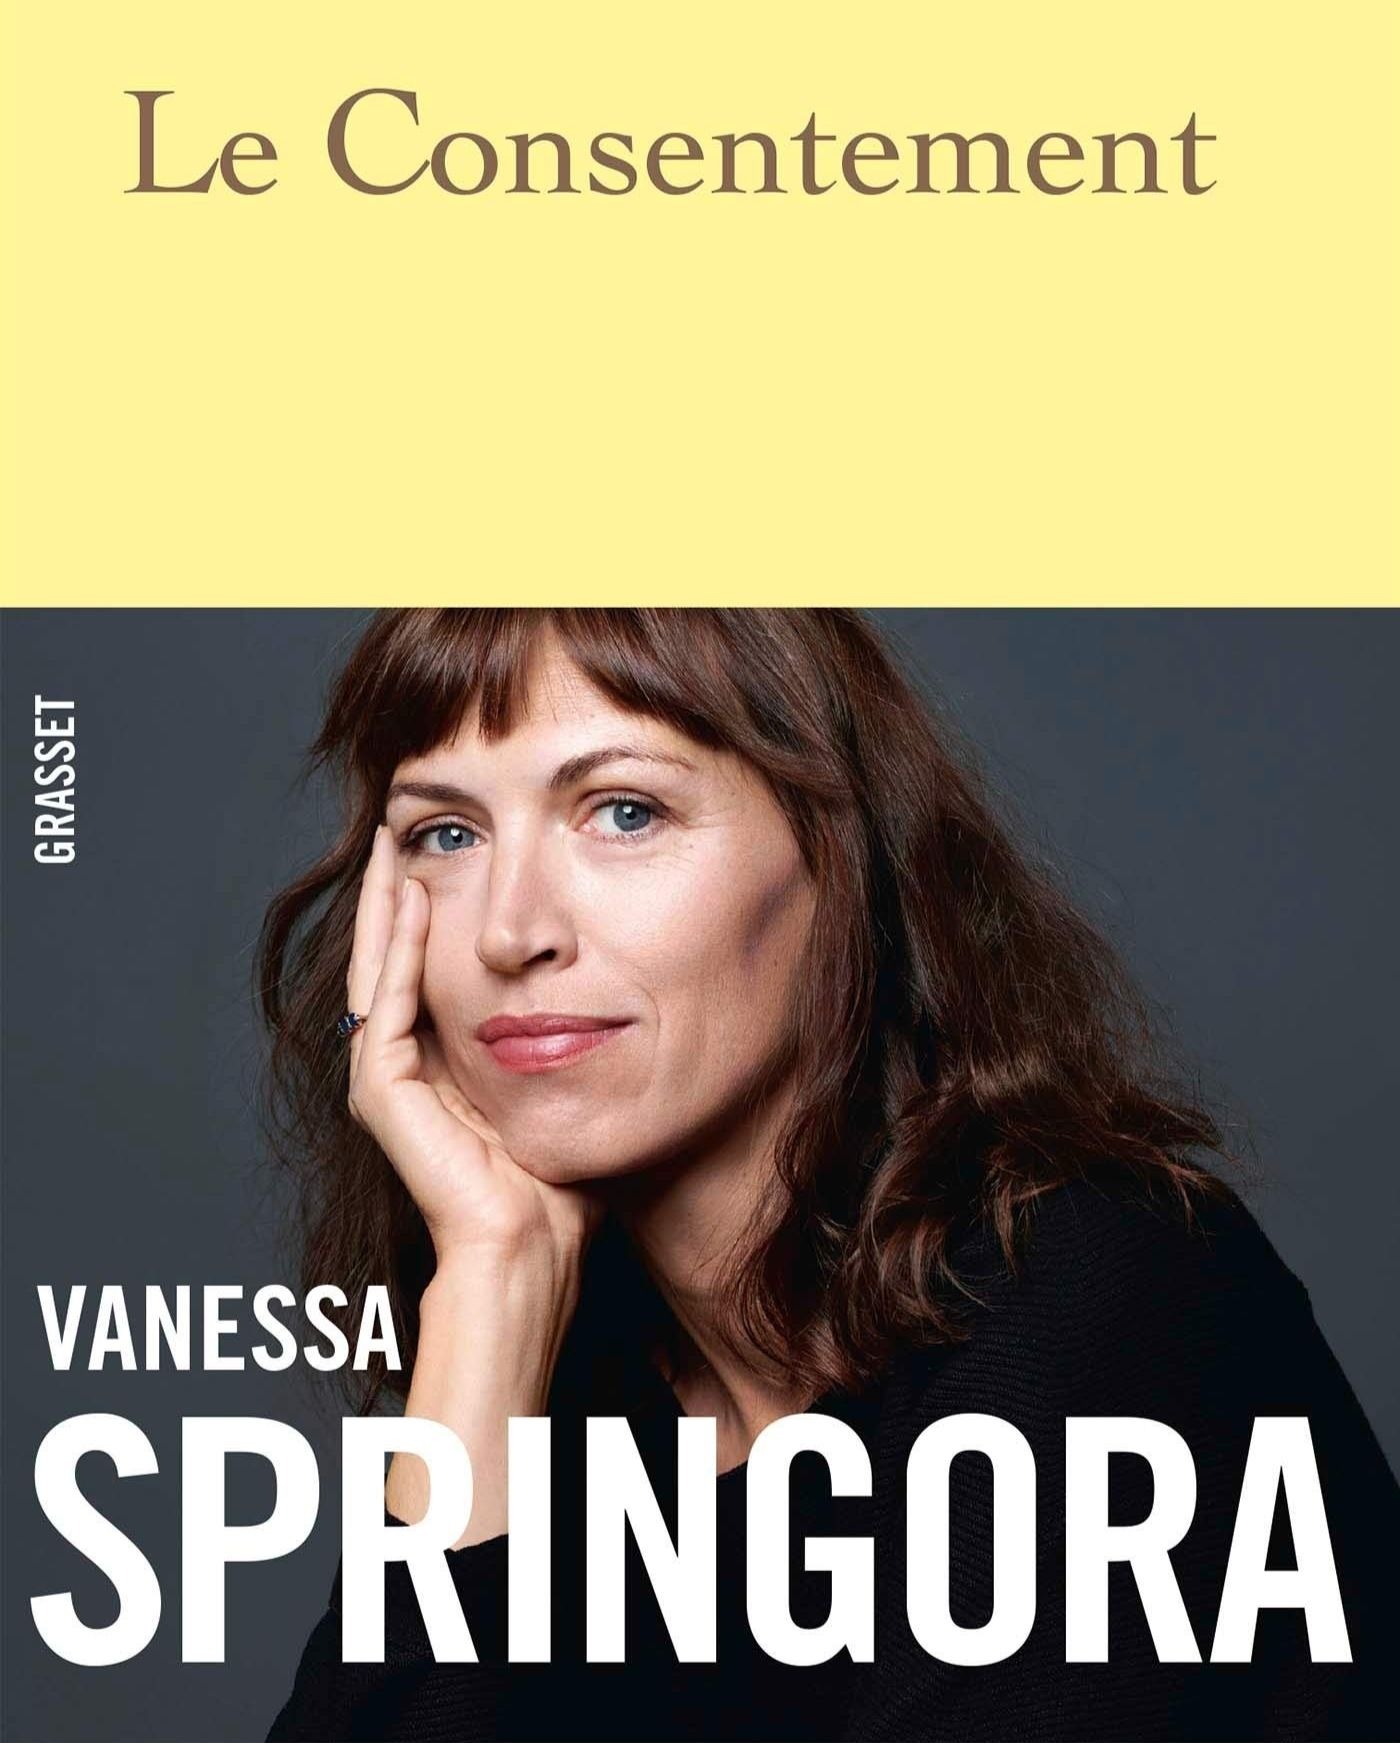 Première page de couverture du livre Le Consentement de Vanessa Springora.